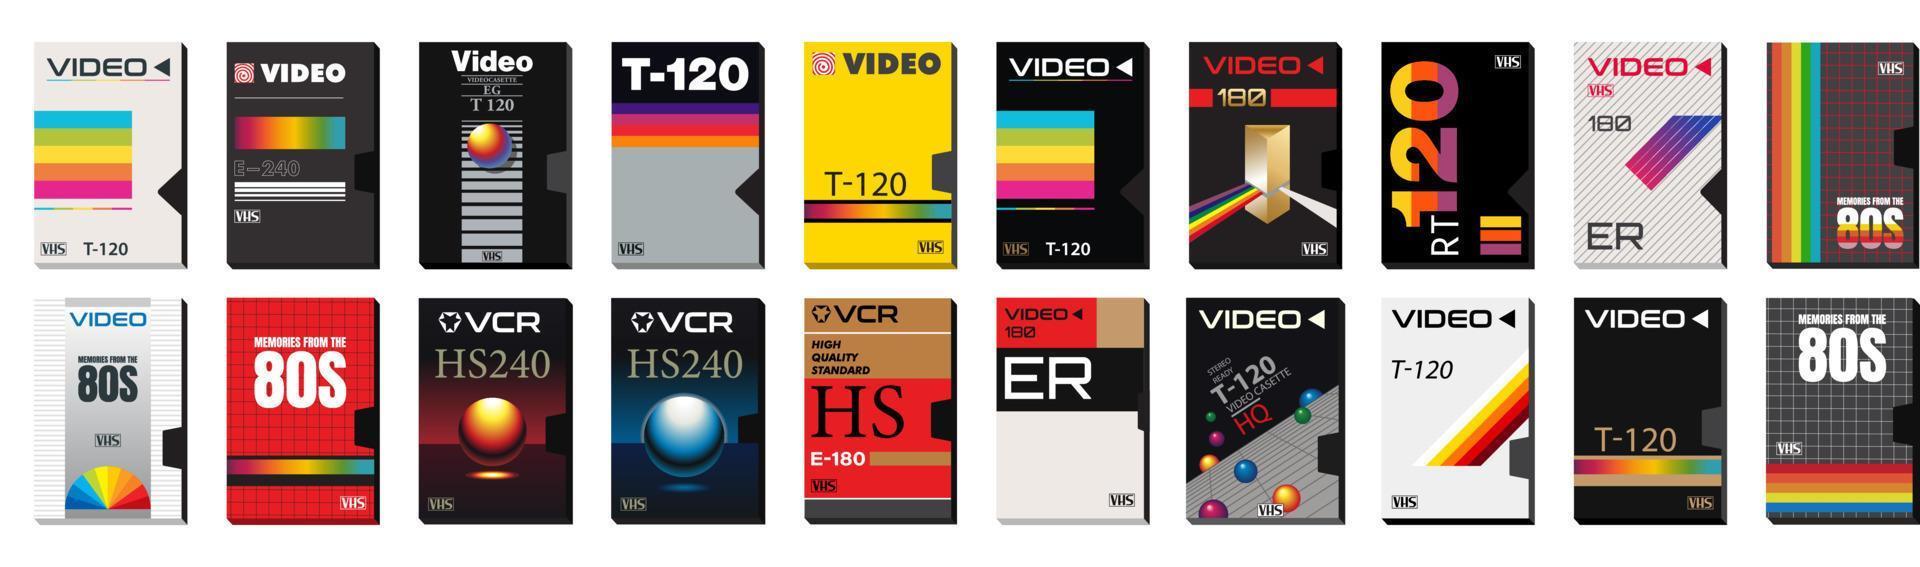 vhs casette vektor grafik och samling av video täcker. abstrakt tom tejp lådor. redo mallar för klistermärken, flygblad, affischer. bio från 80s och 90-tal. synthwave vibrafon. retro teknologi.